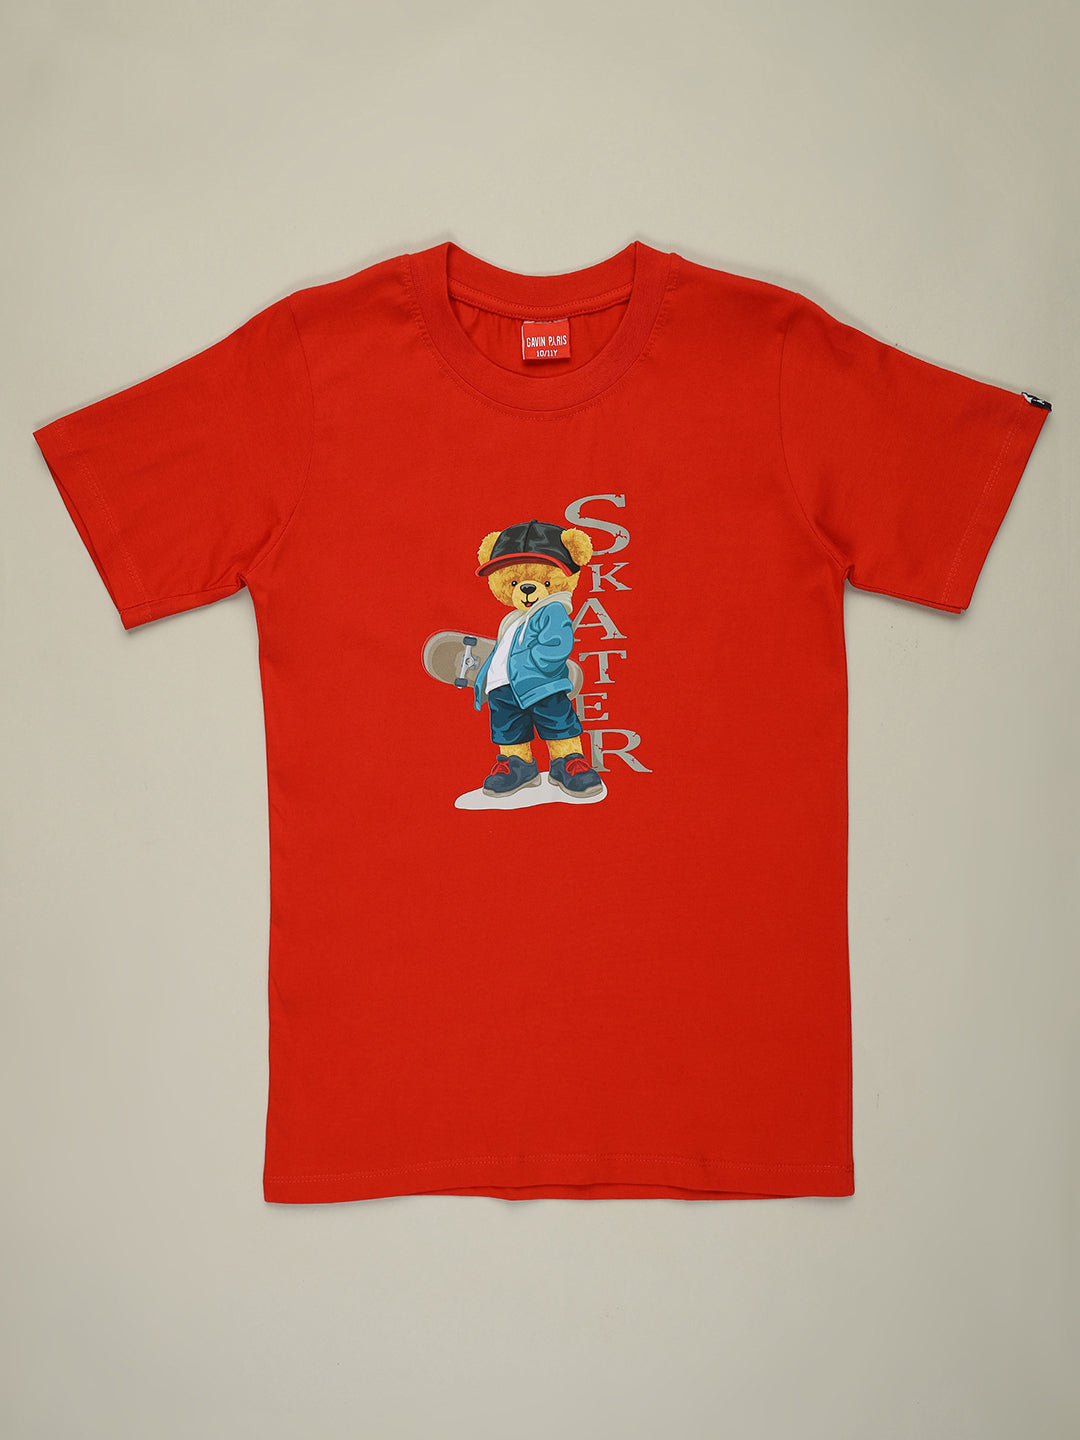 Skater T-shirts for Boys & Girls